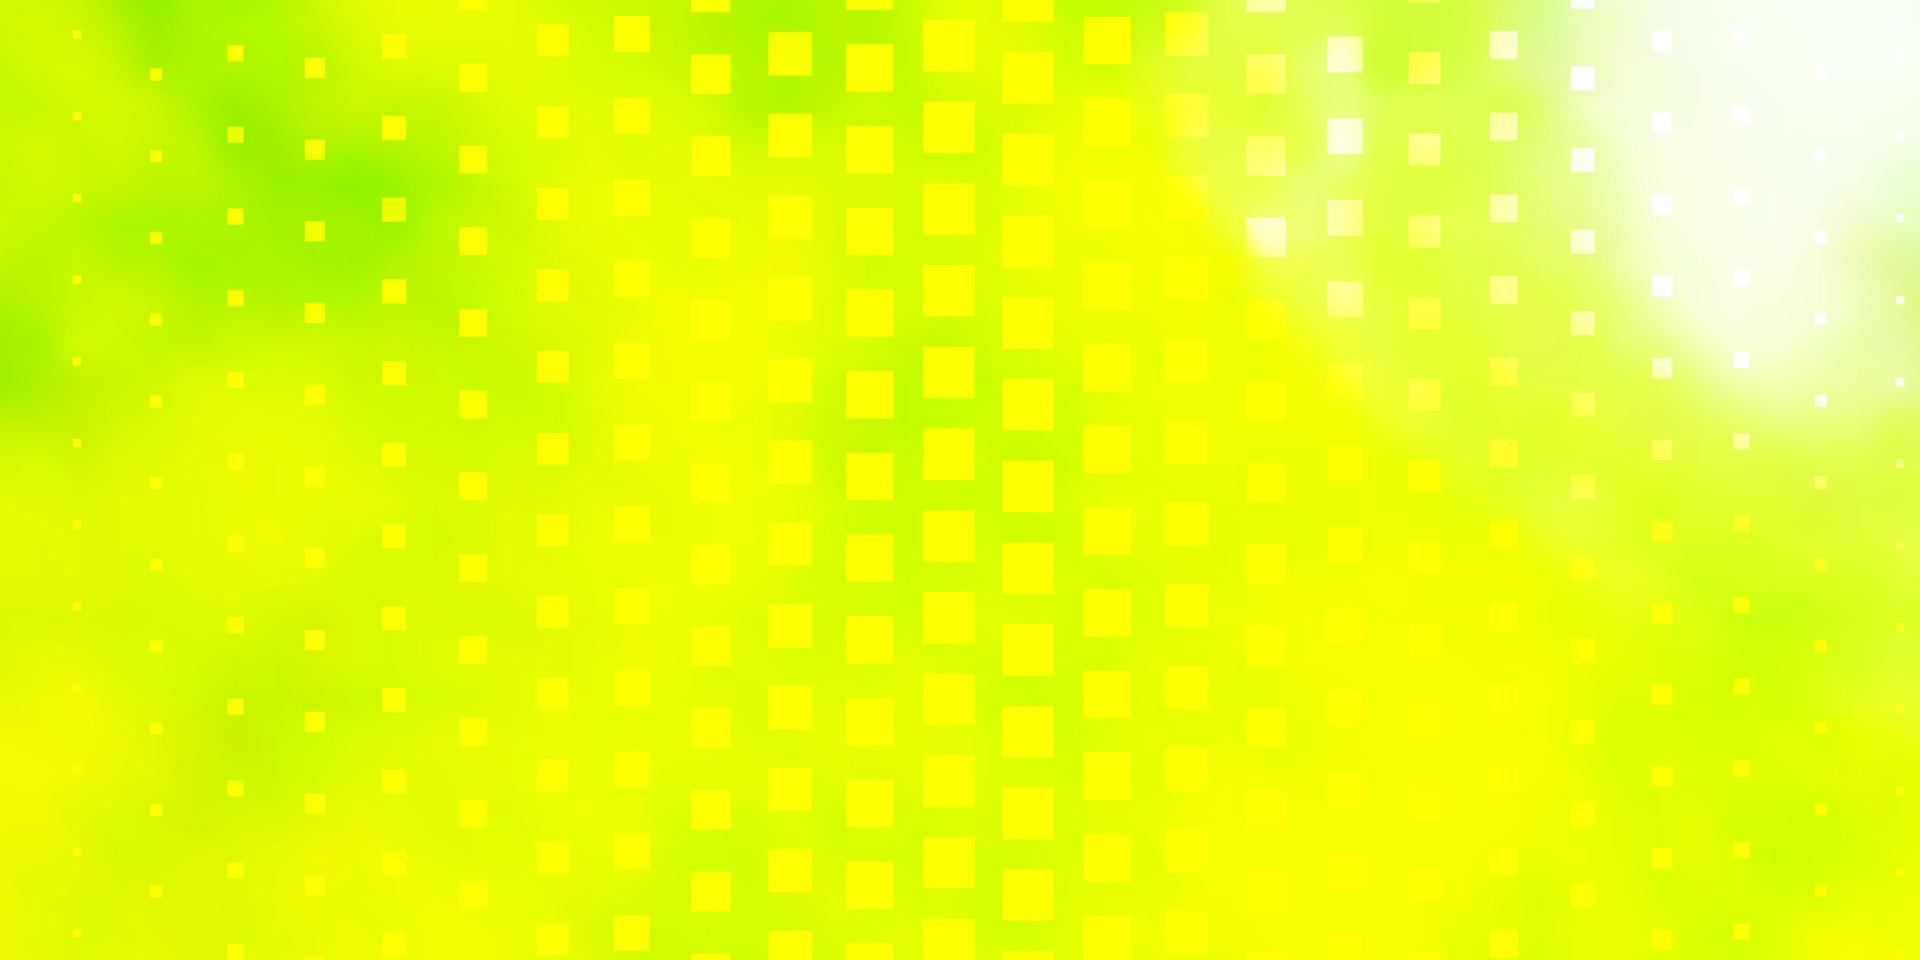 Tận hưởng không gian làm việc sáng tạo với hình nền vector xanh lá cây vàng tươi sáng, với các hình chữ nhật sắp xếp theo kiểu mẫu độc đáo. Hãy cùng khám phá những bức tranh tuyệt đẹp trong hình ảnh này nào!